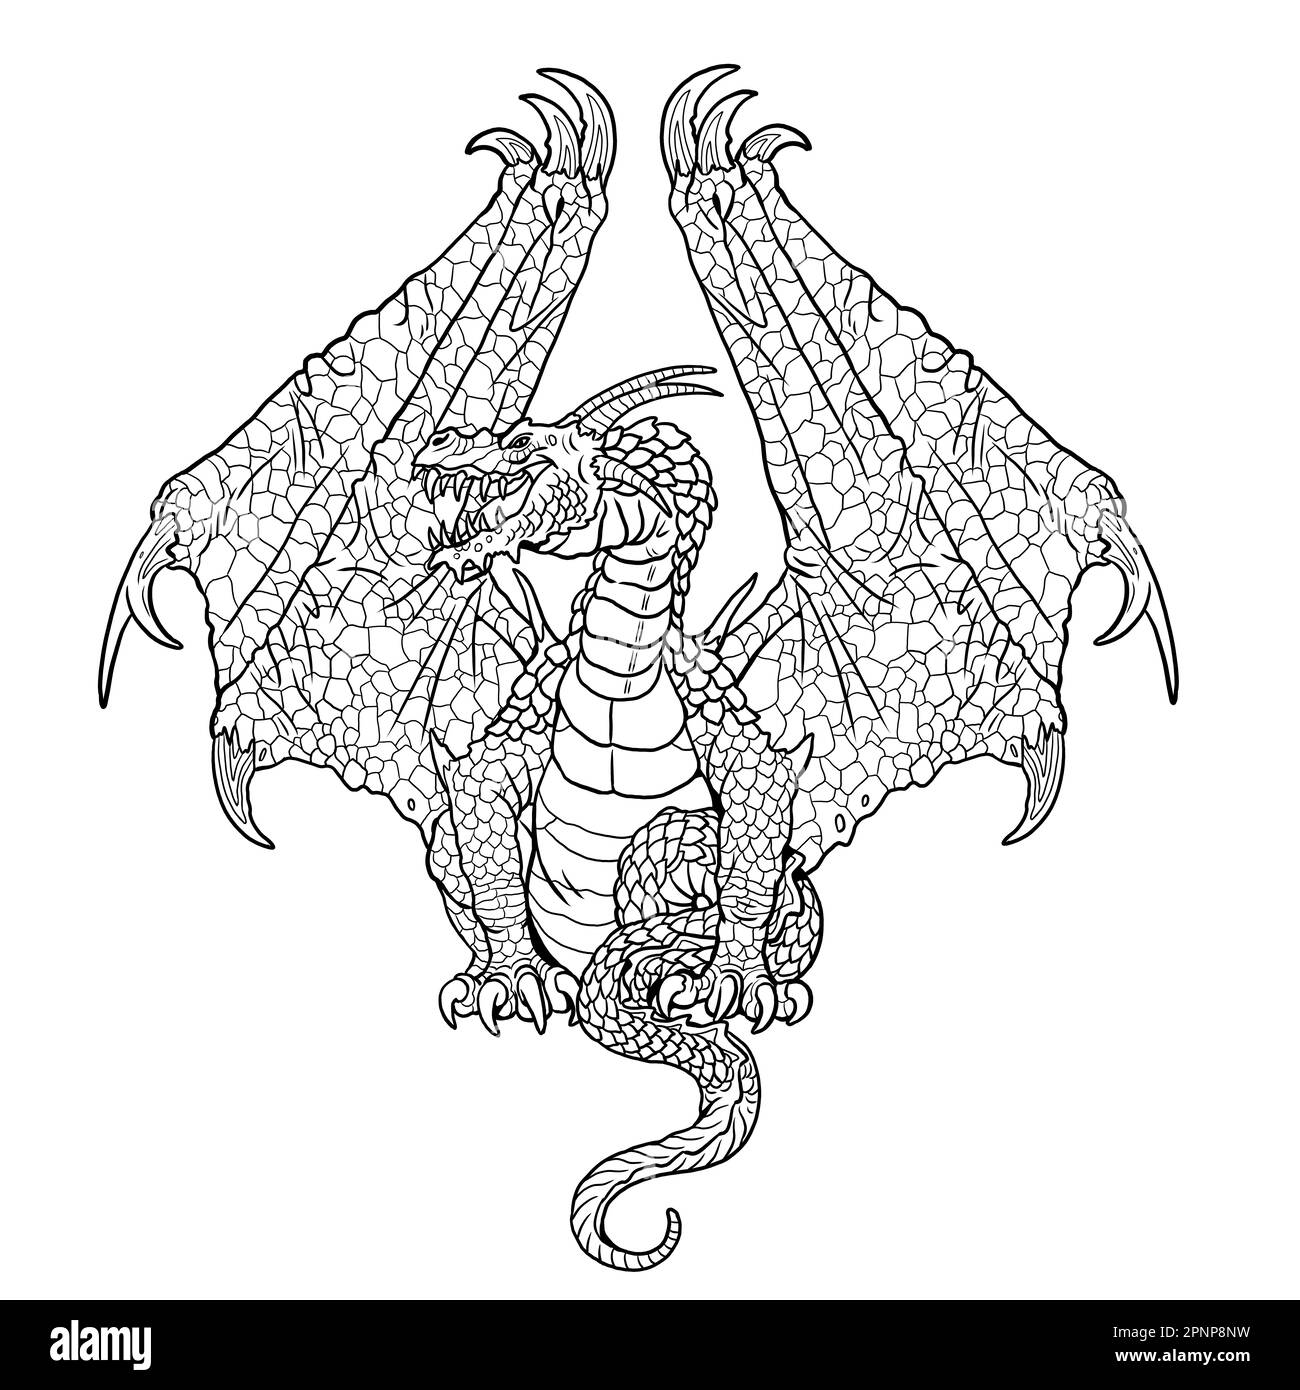 Dragón página para colorear. Ilustración de fantasía con criatura mítica. Dibujo de dragón hoja para colorear. Foto de stock